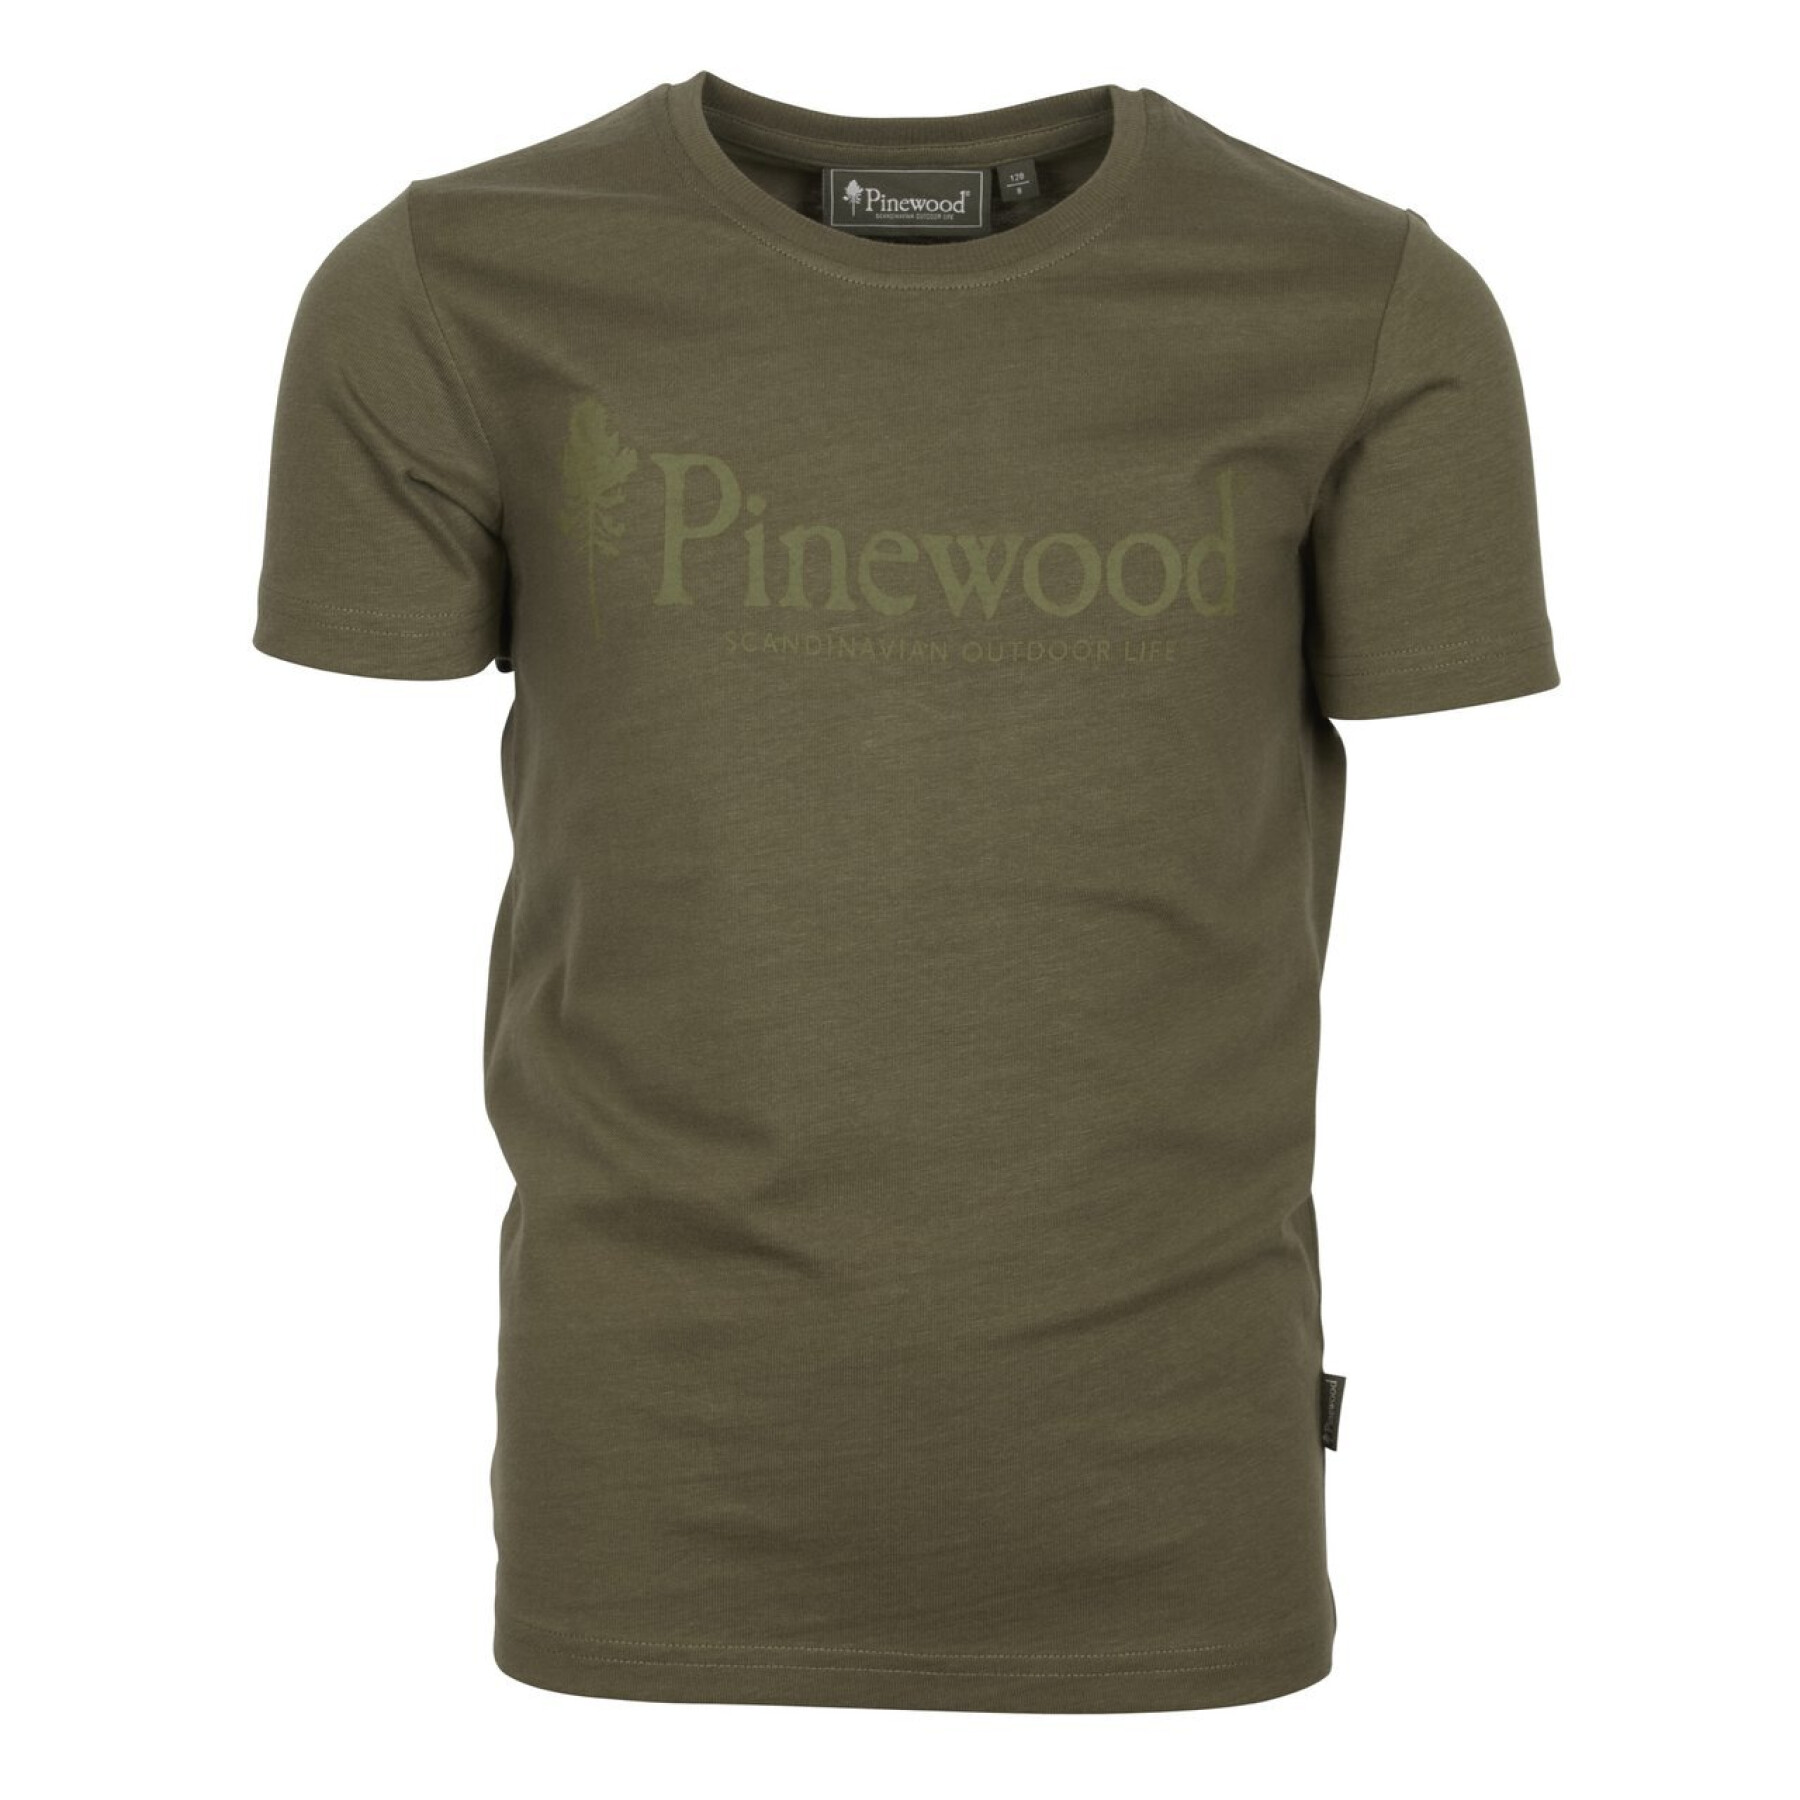 Kinder-T-shirt Pinewood Life